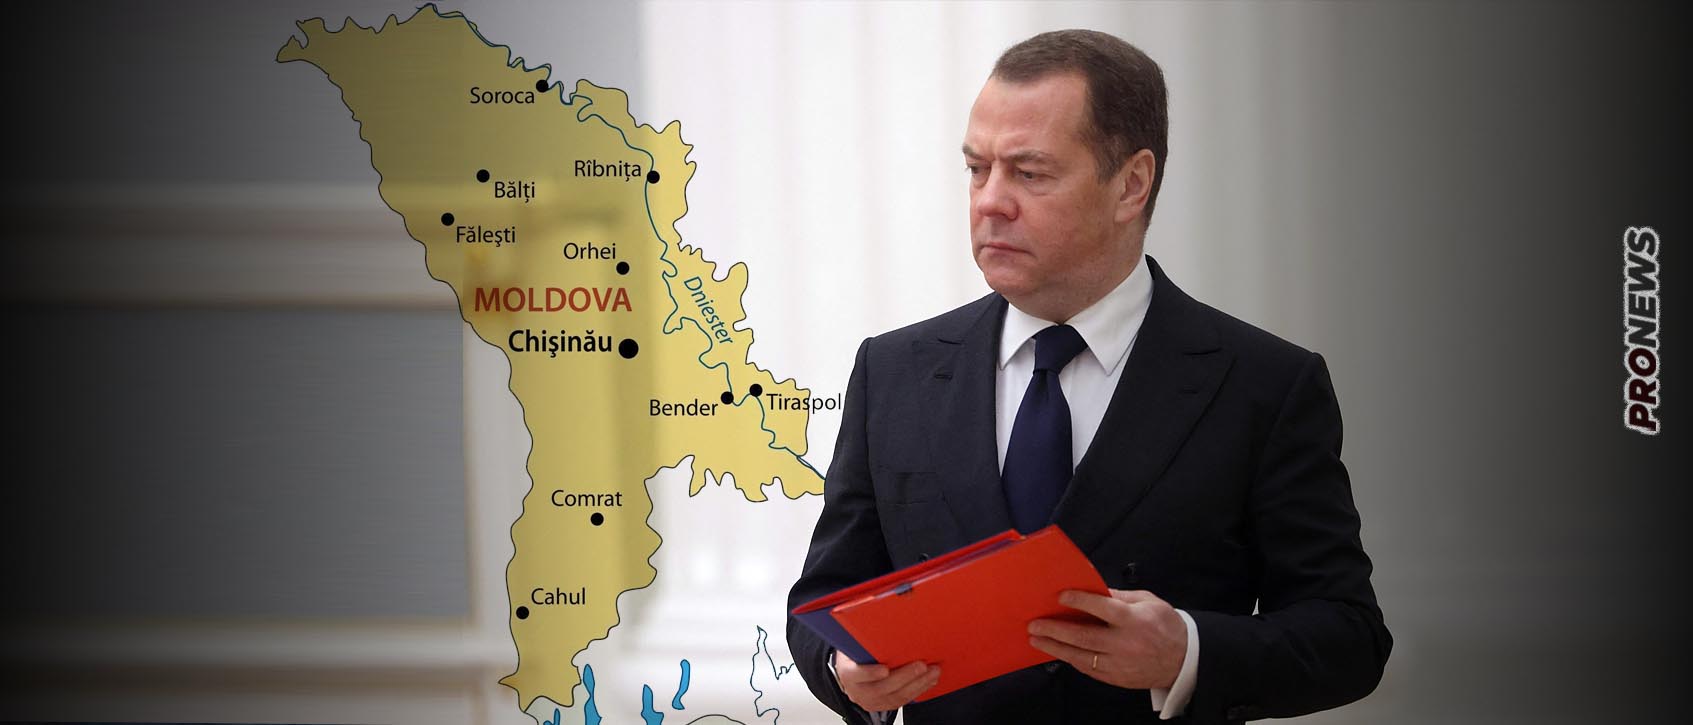 Ν.Μεντβέντεφ για Μολδαβία: «Η χώρα αυτή δεν υπάρχει για εμάς αρκεί να σέβεται το καθεστώς της Δημοκρατίας της Υπερδνειστερίας»